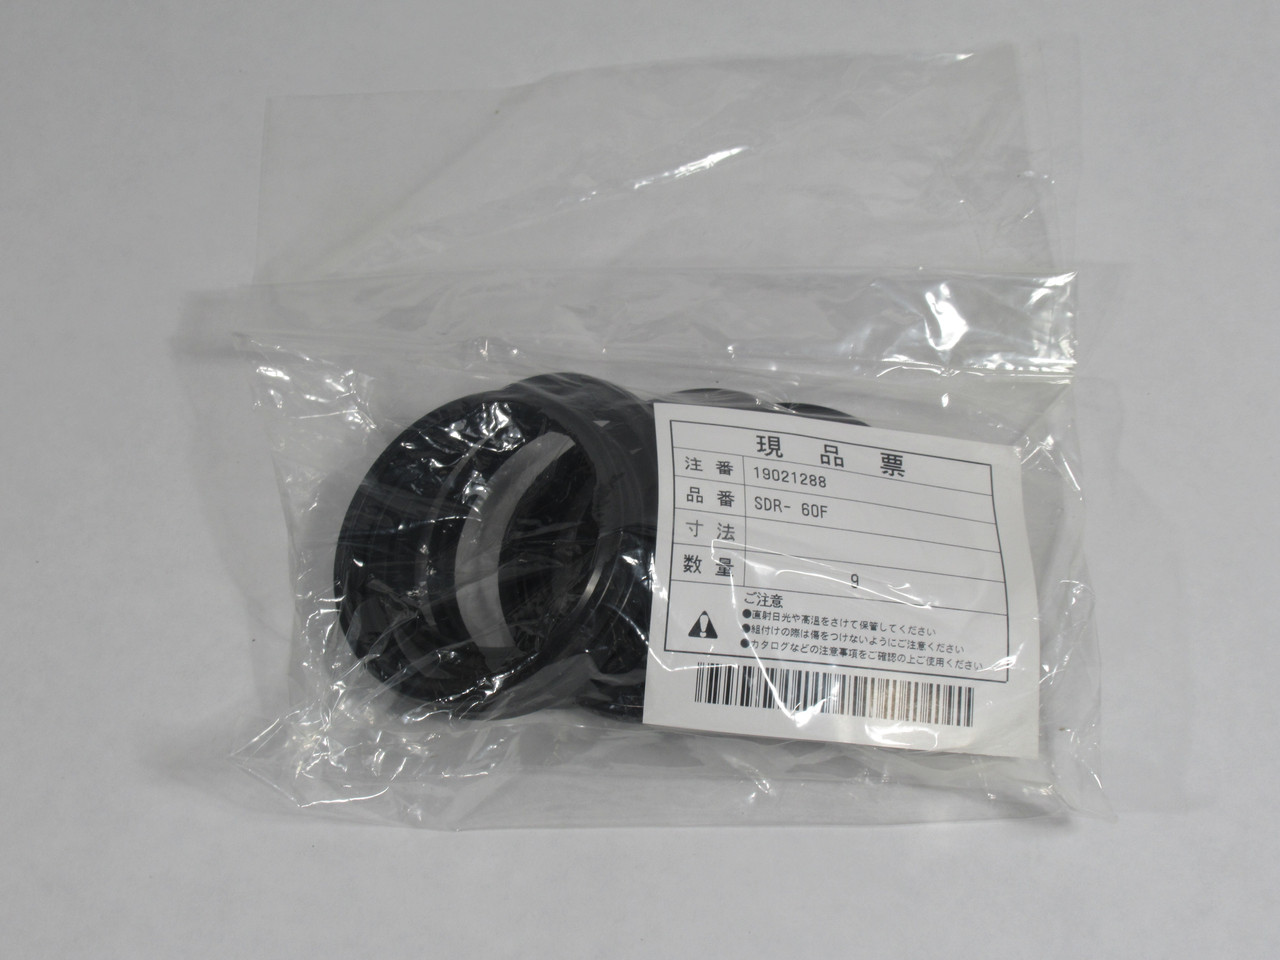 Sakagami SDR-60F Scraper Heat Resistant Dust Seal 60mm ID x 6.5mm W *9-Pack* NWB